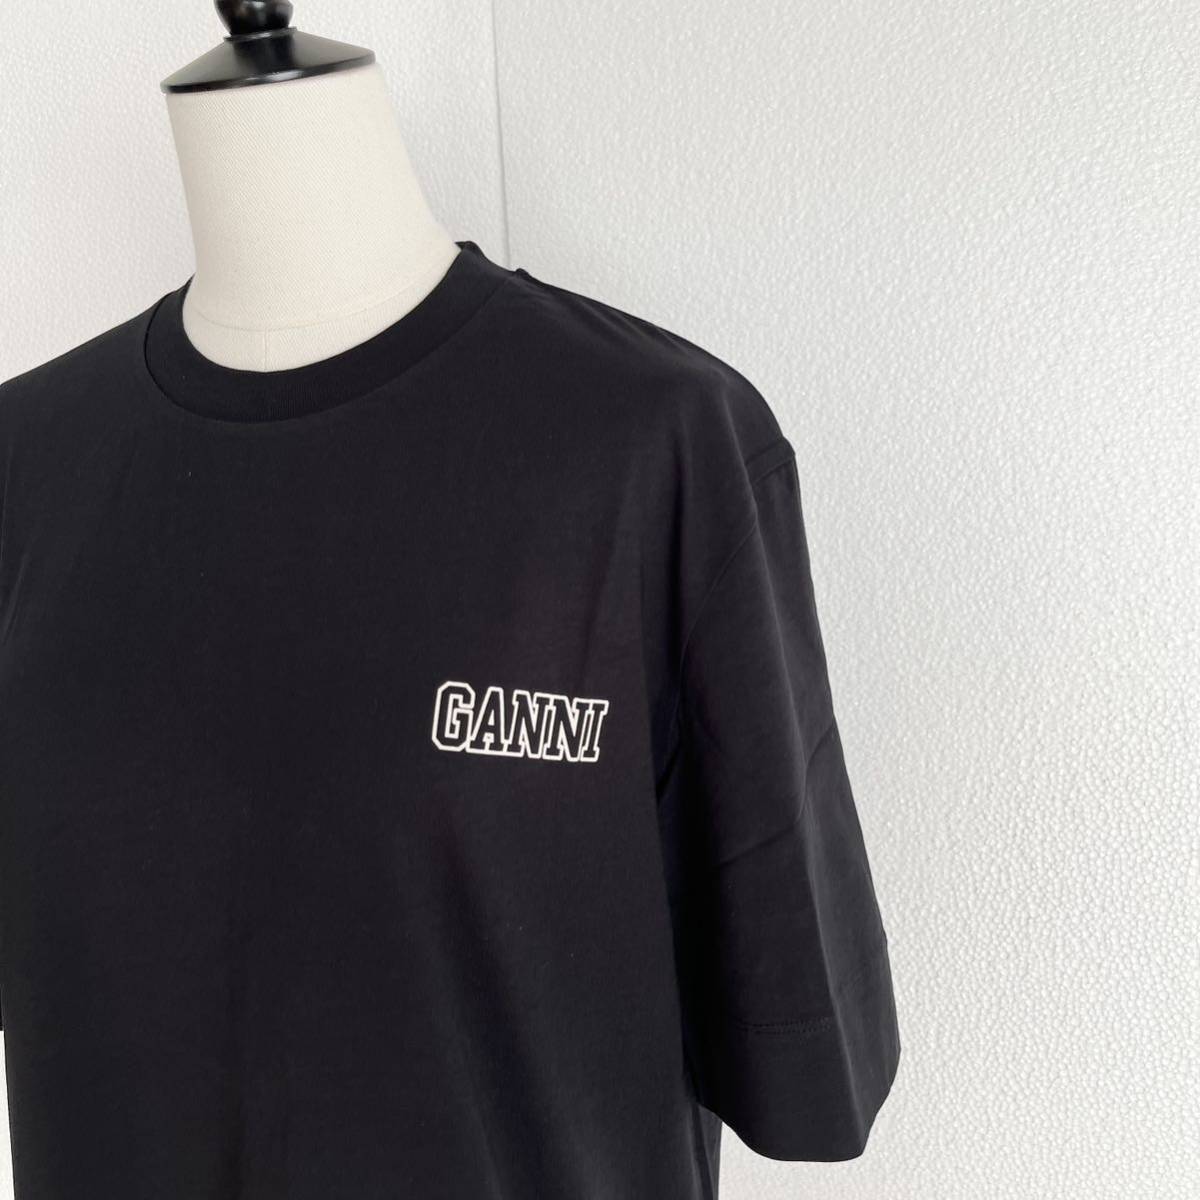 GANNI ガニー ロゴ入り半袖Tシャツ カットソー ブラック XSサイズ